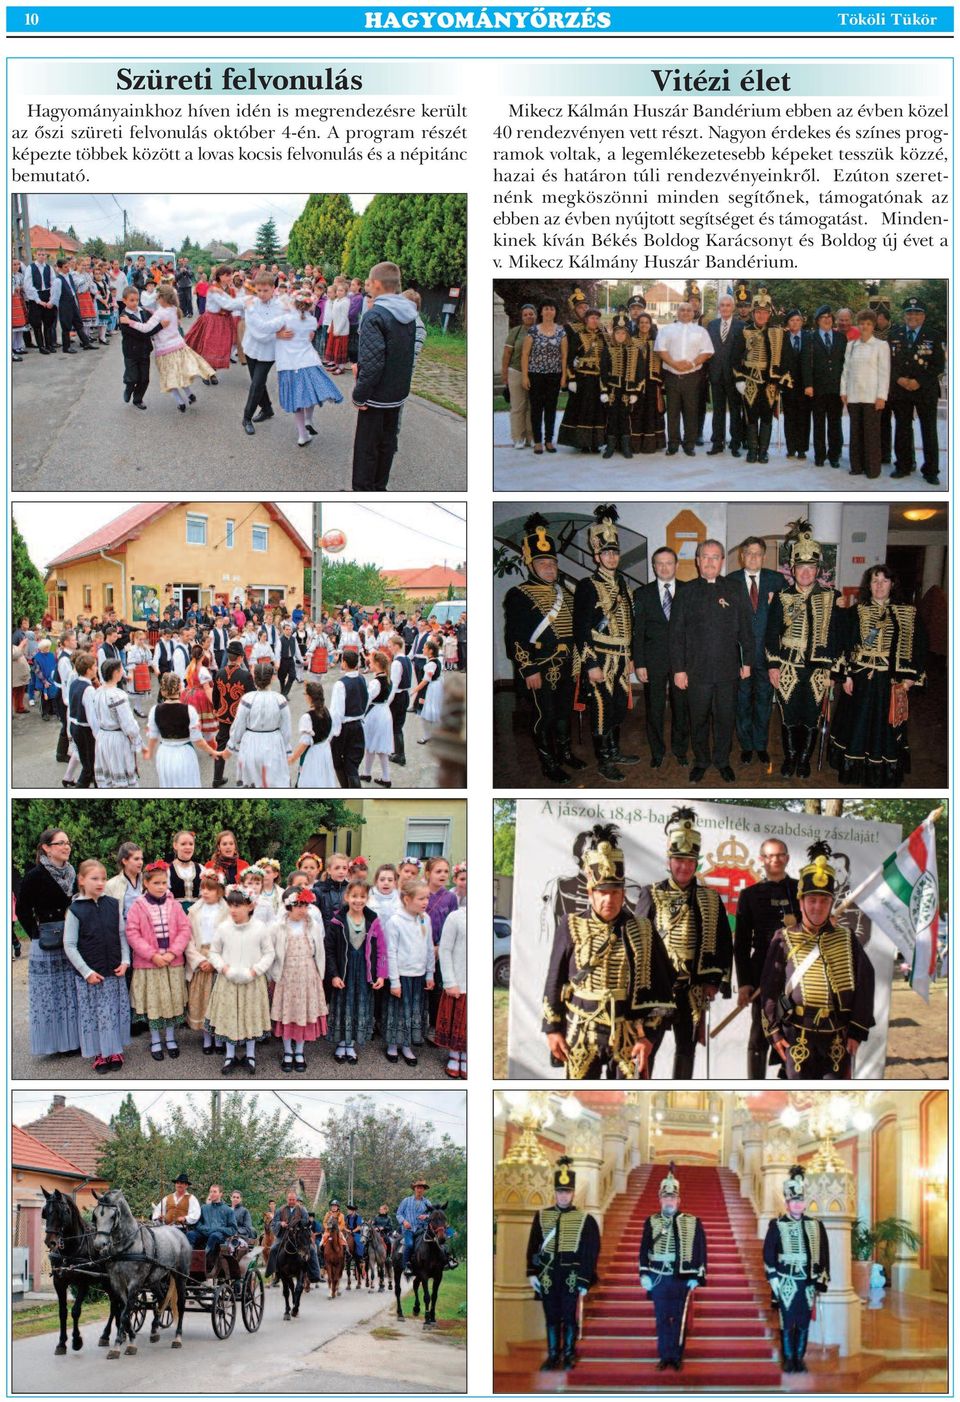 Vitézi élet Mikecz Kálmán Huszár Bandérium ebben az évben közel 40 rendezvényen vett részt.